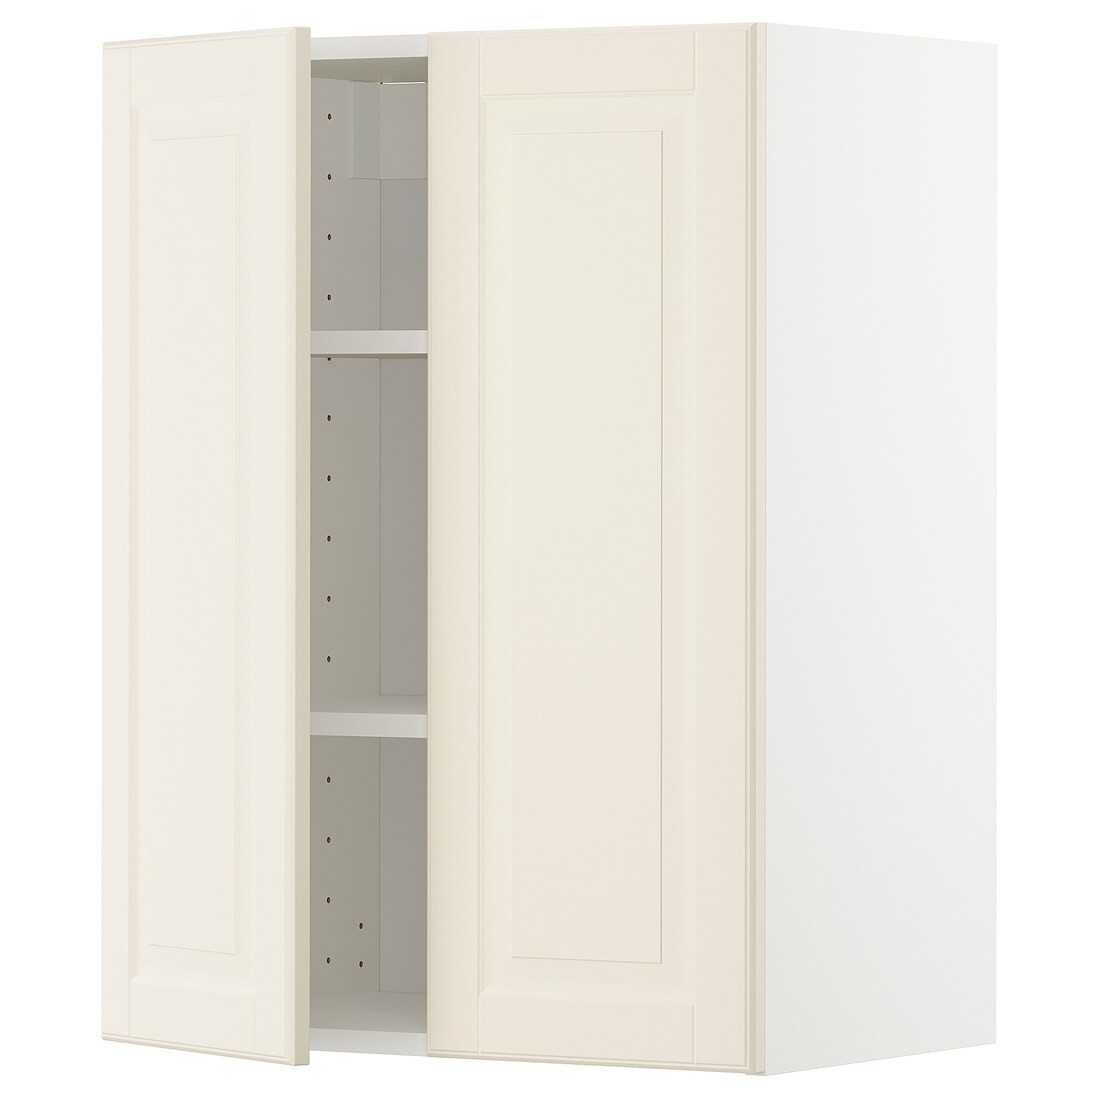 METOD МЕТОД Навесной шкаф с полками / 2 дверцы, белый / Bodbyn кремовый, 60x80 см